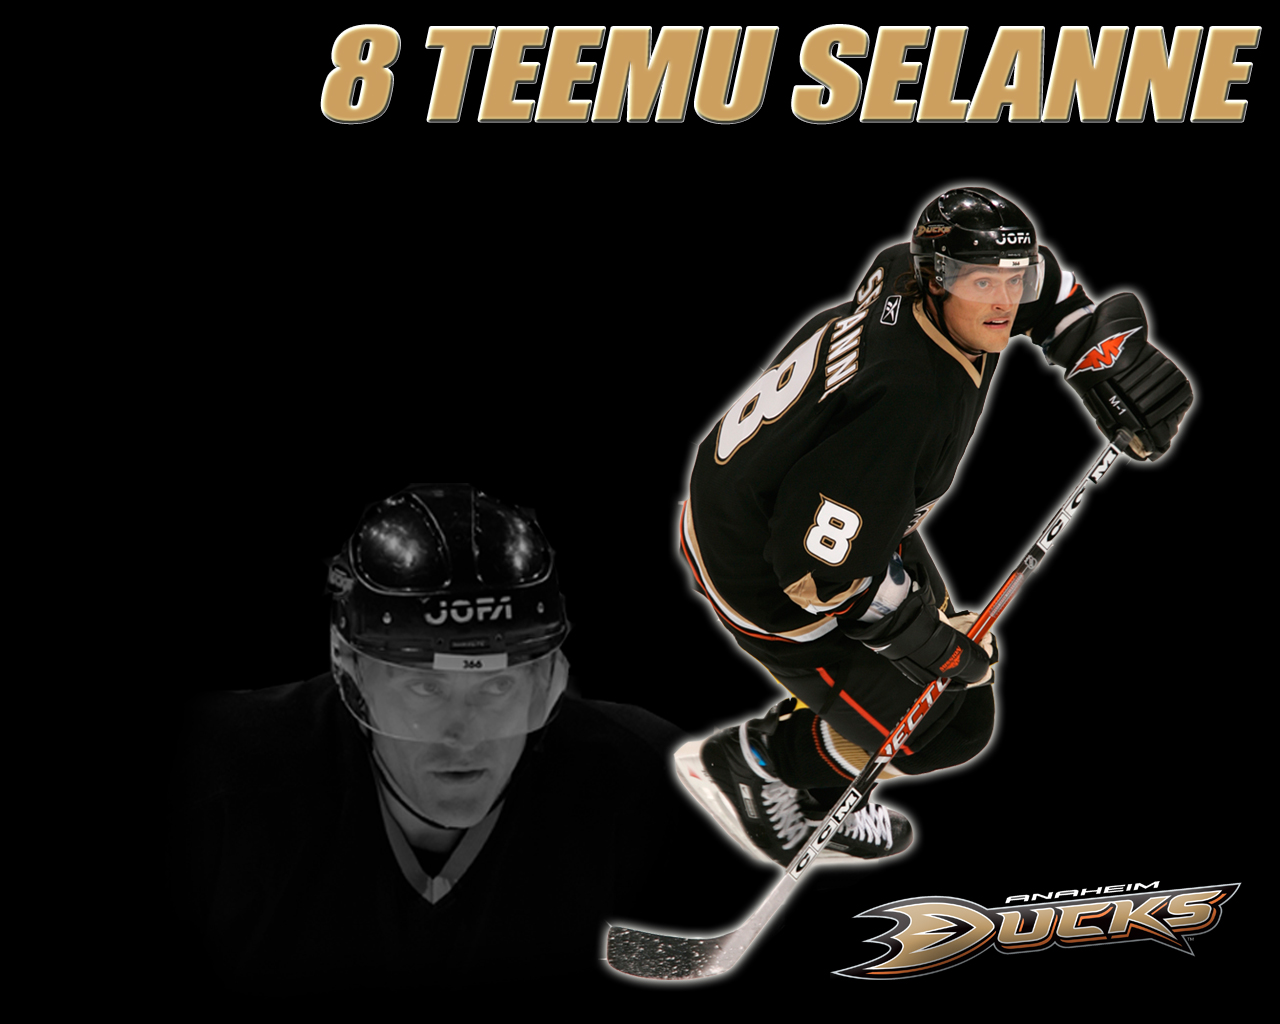 Free download NHL Wallpapers Teemu Selanne Ducks wallpaper